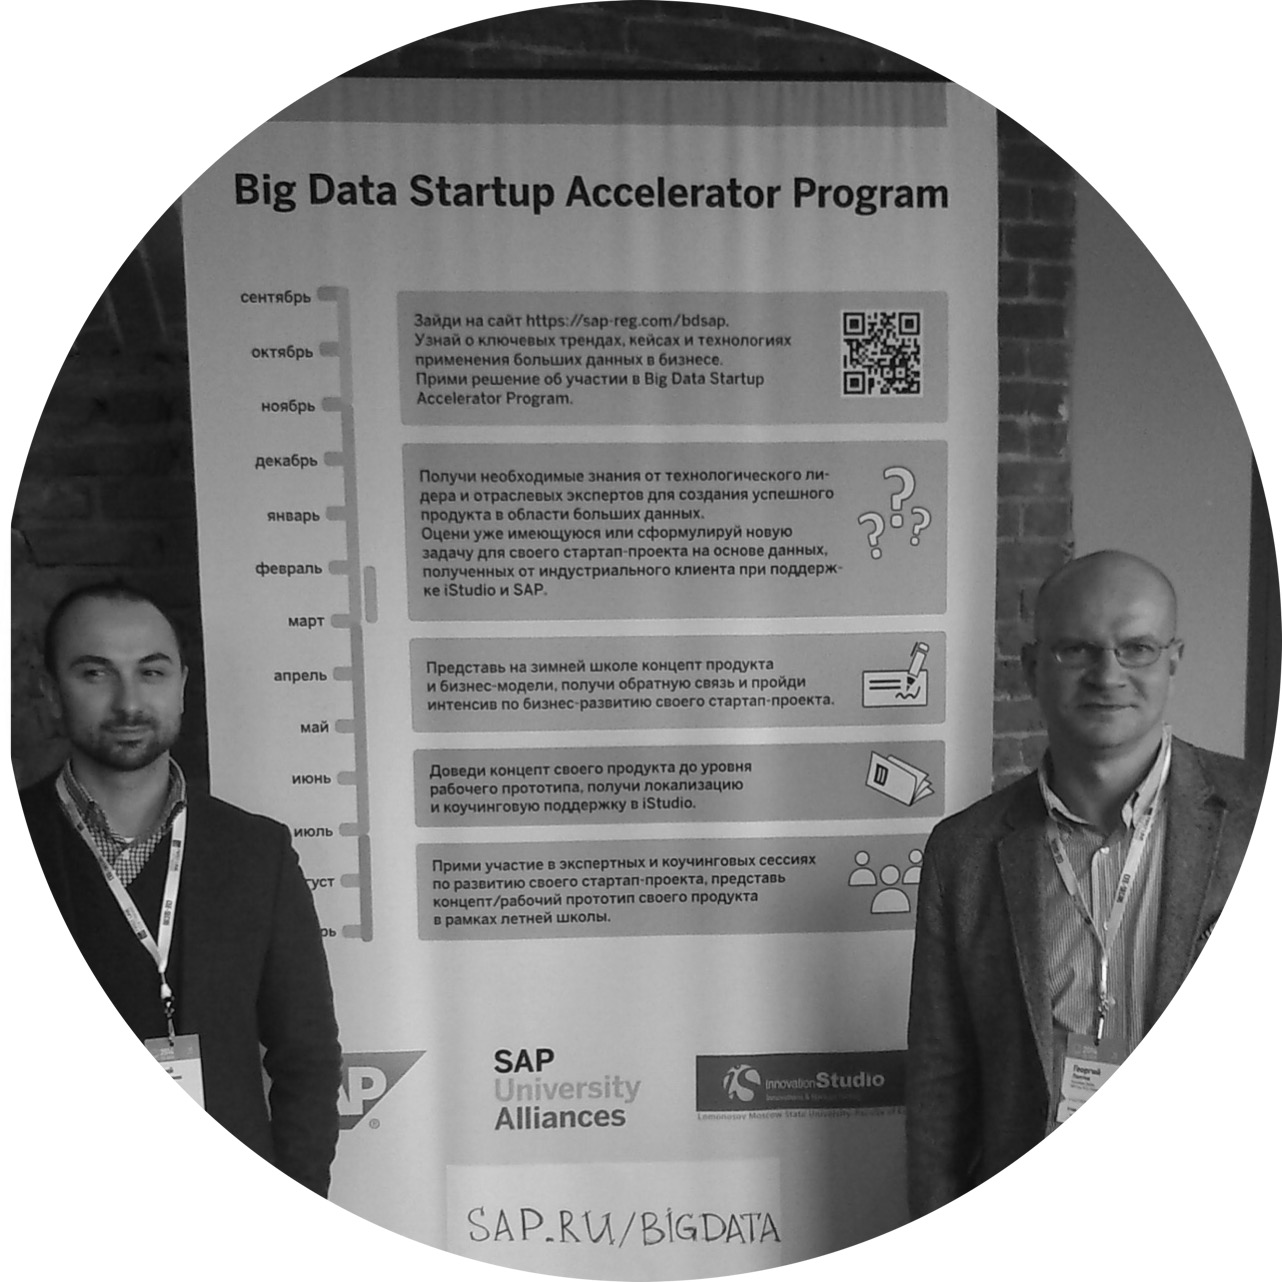 innovationStudio и Университетский альянс SAP запустили программу акселерации “Big Data Startup Accelerator Program”